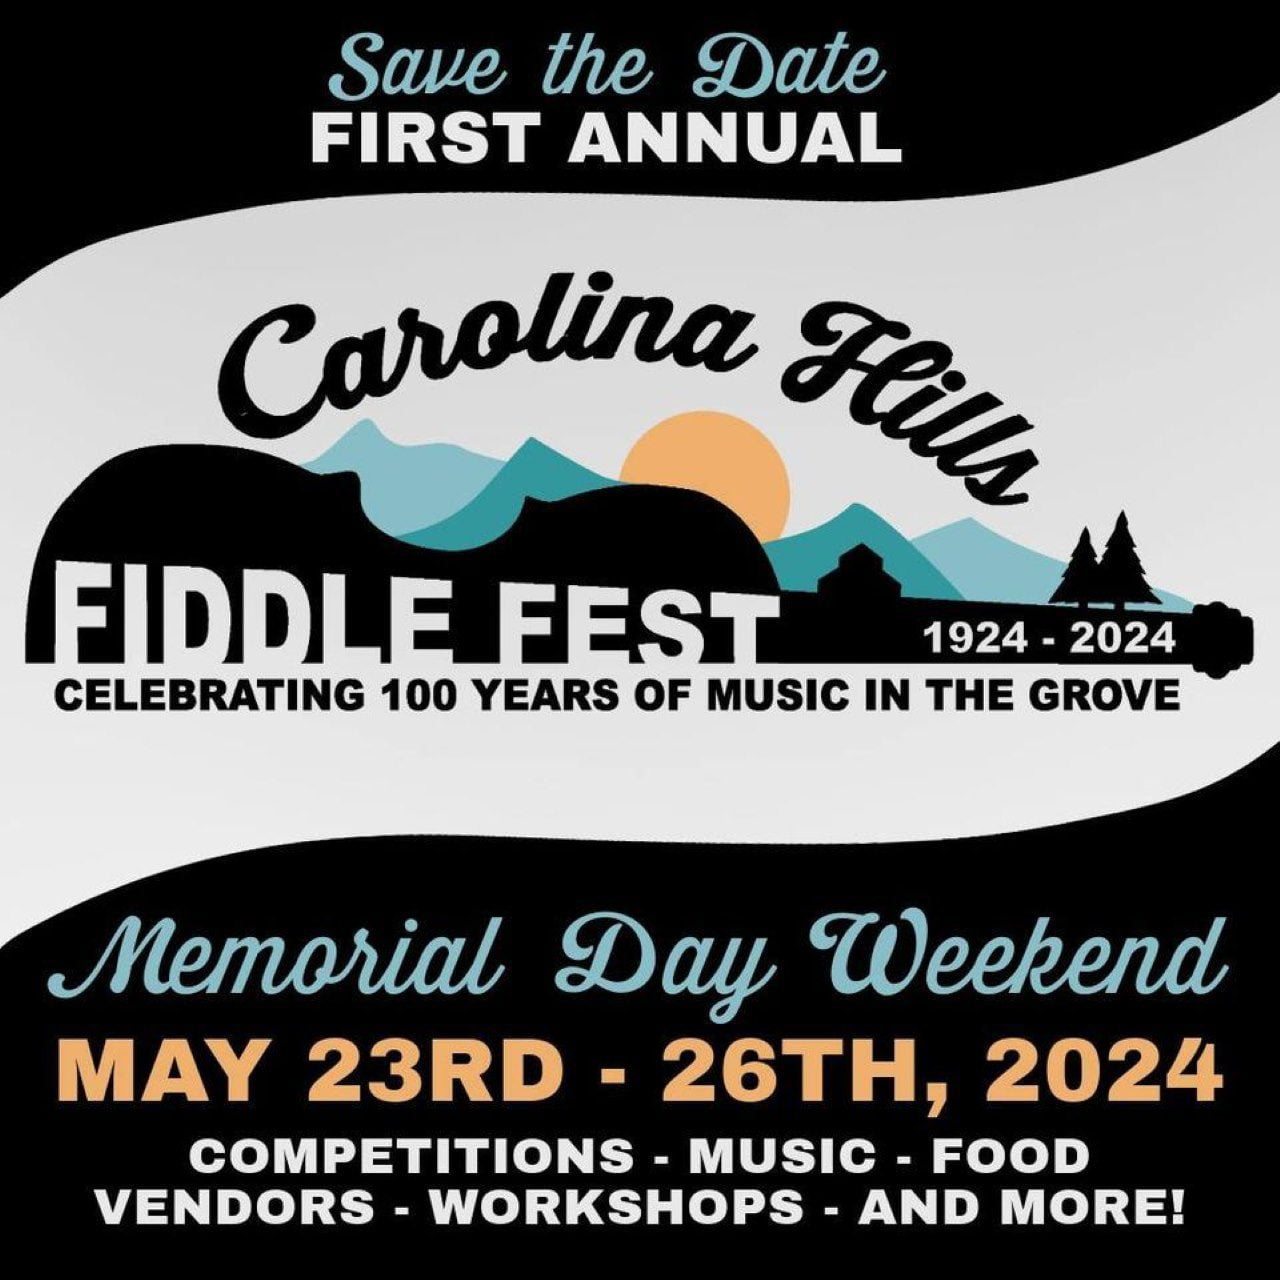 Union Grove - Carolina Hills Fiddle Fest